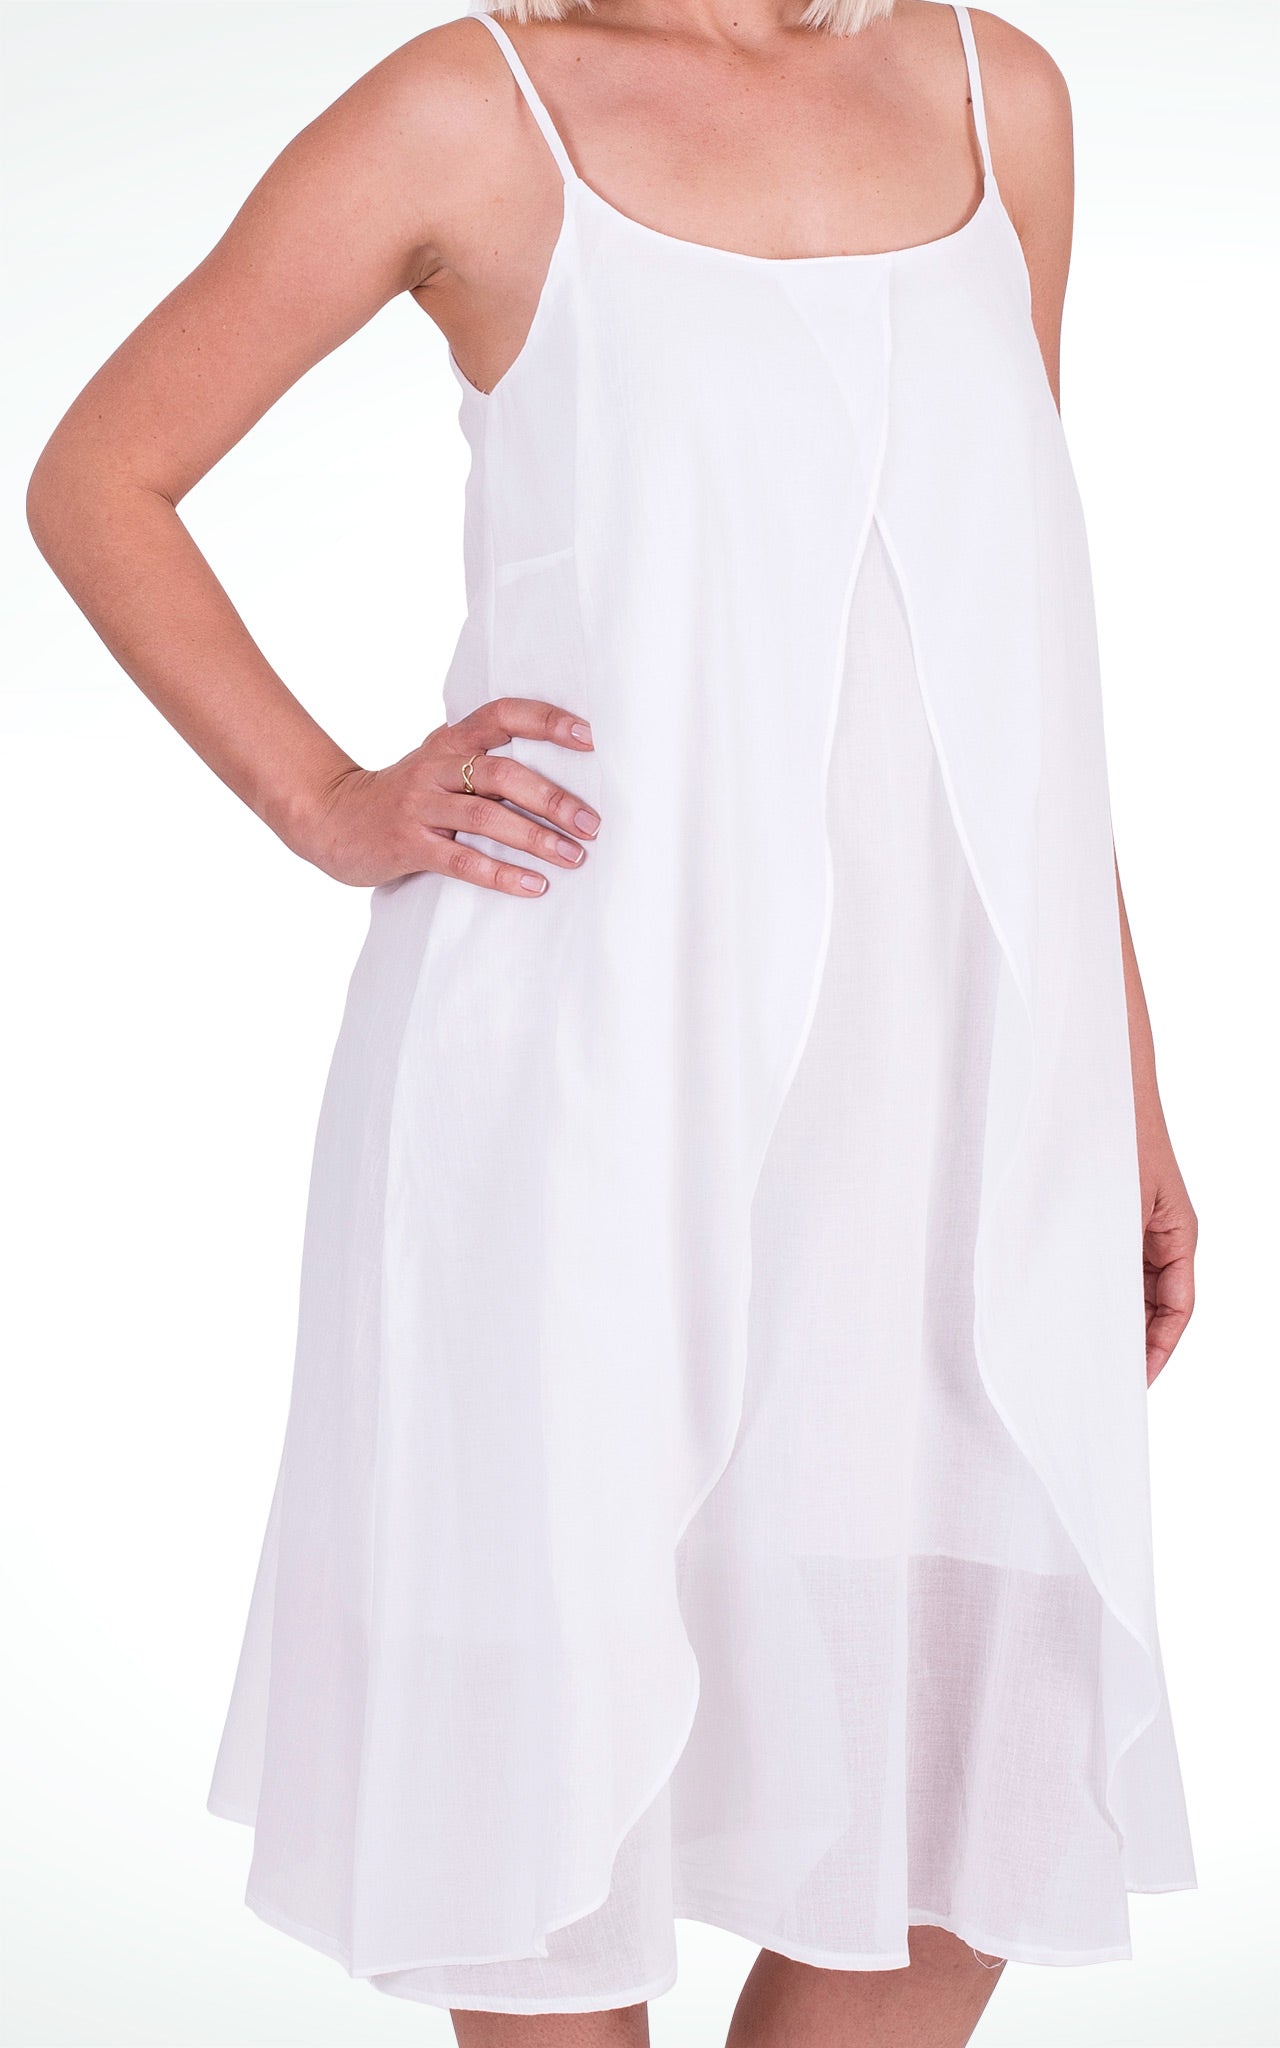 Women's White Cotton Wrap Dress with Spaghetti Straps